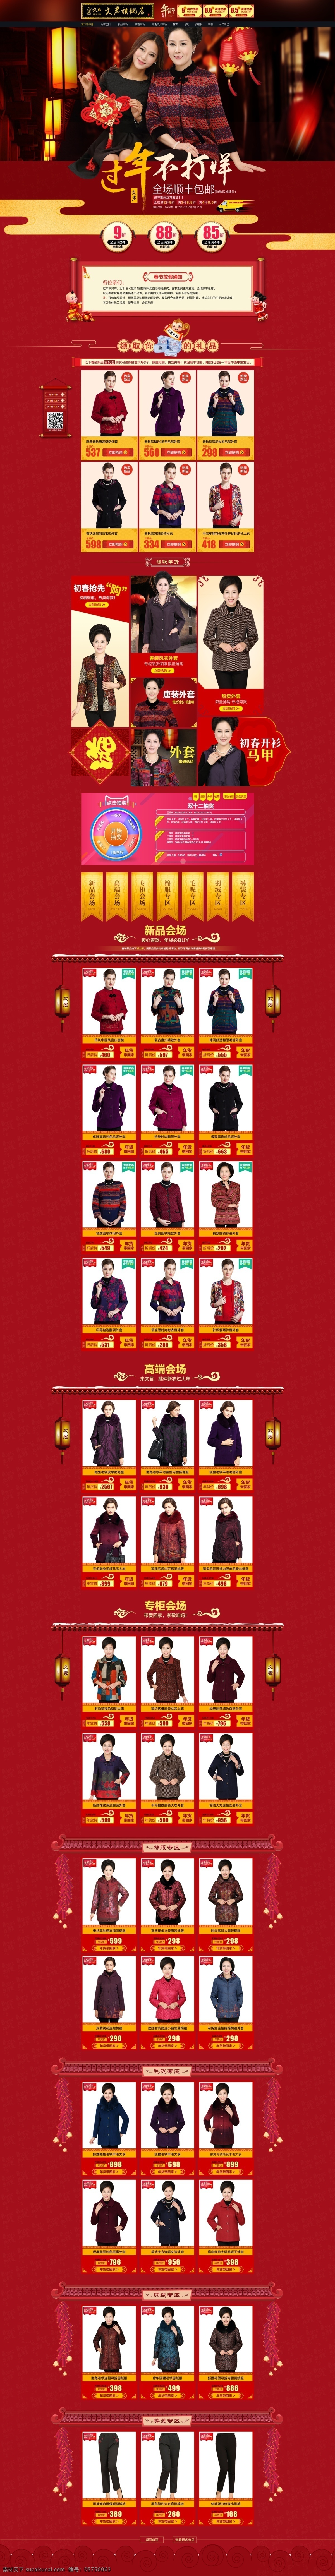 年货节 春节 过年 不 打烊 喜庆 首页设计 传统 复古 中国 风 红色喜庆 女装 首页 模板